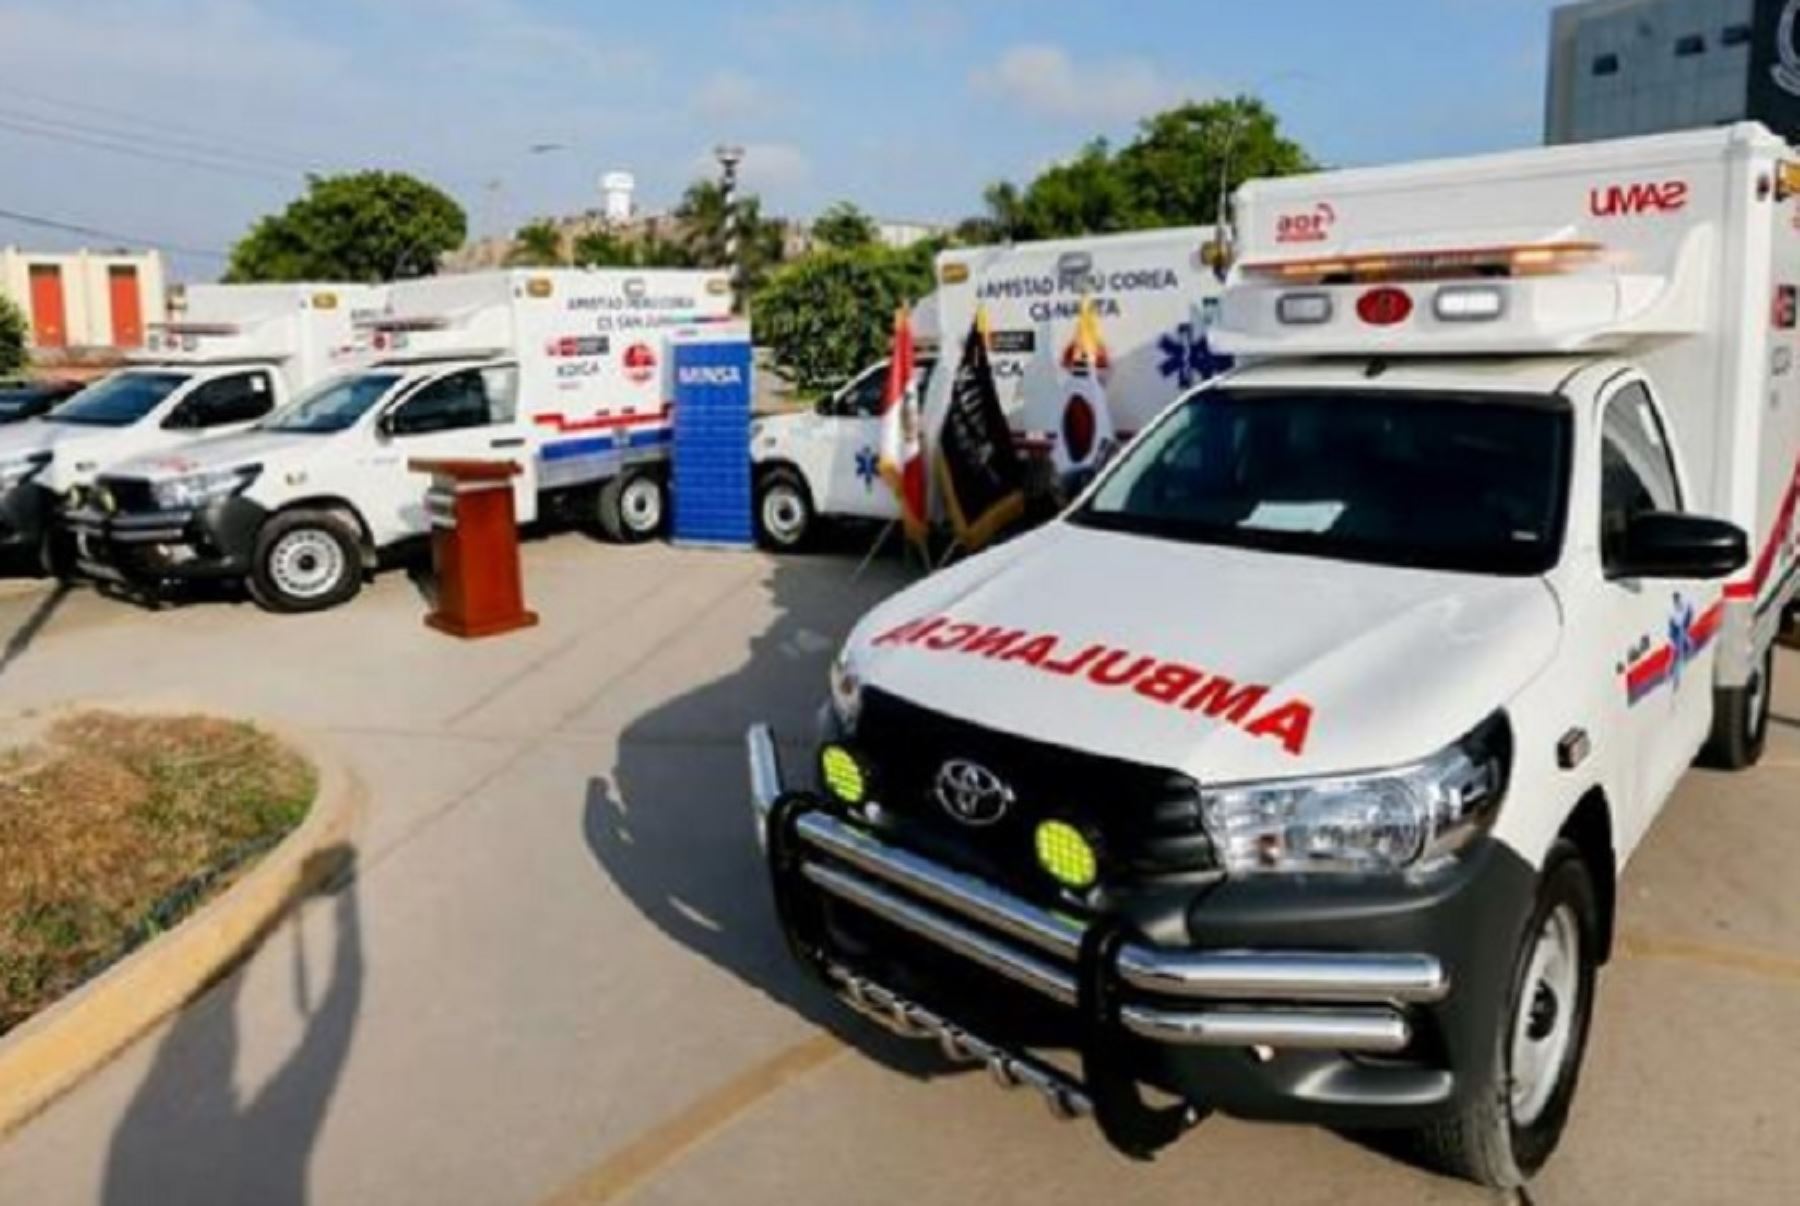 Con la finalidad de mejorar la capacidad de los establecimientos de salud de la Amazonía en la respuesta a las emergencias y urgencias, el Ministerio de Salud (Minsa) y la Agencia de Cooperación Internacional de Corea (Koica) realizaron la entrega de cinco ambulancias terrestres de tipo rural y urbana para la región Loreto.